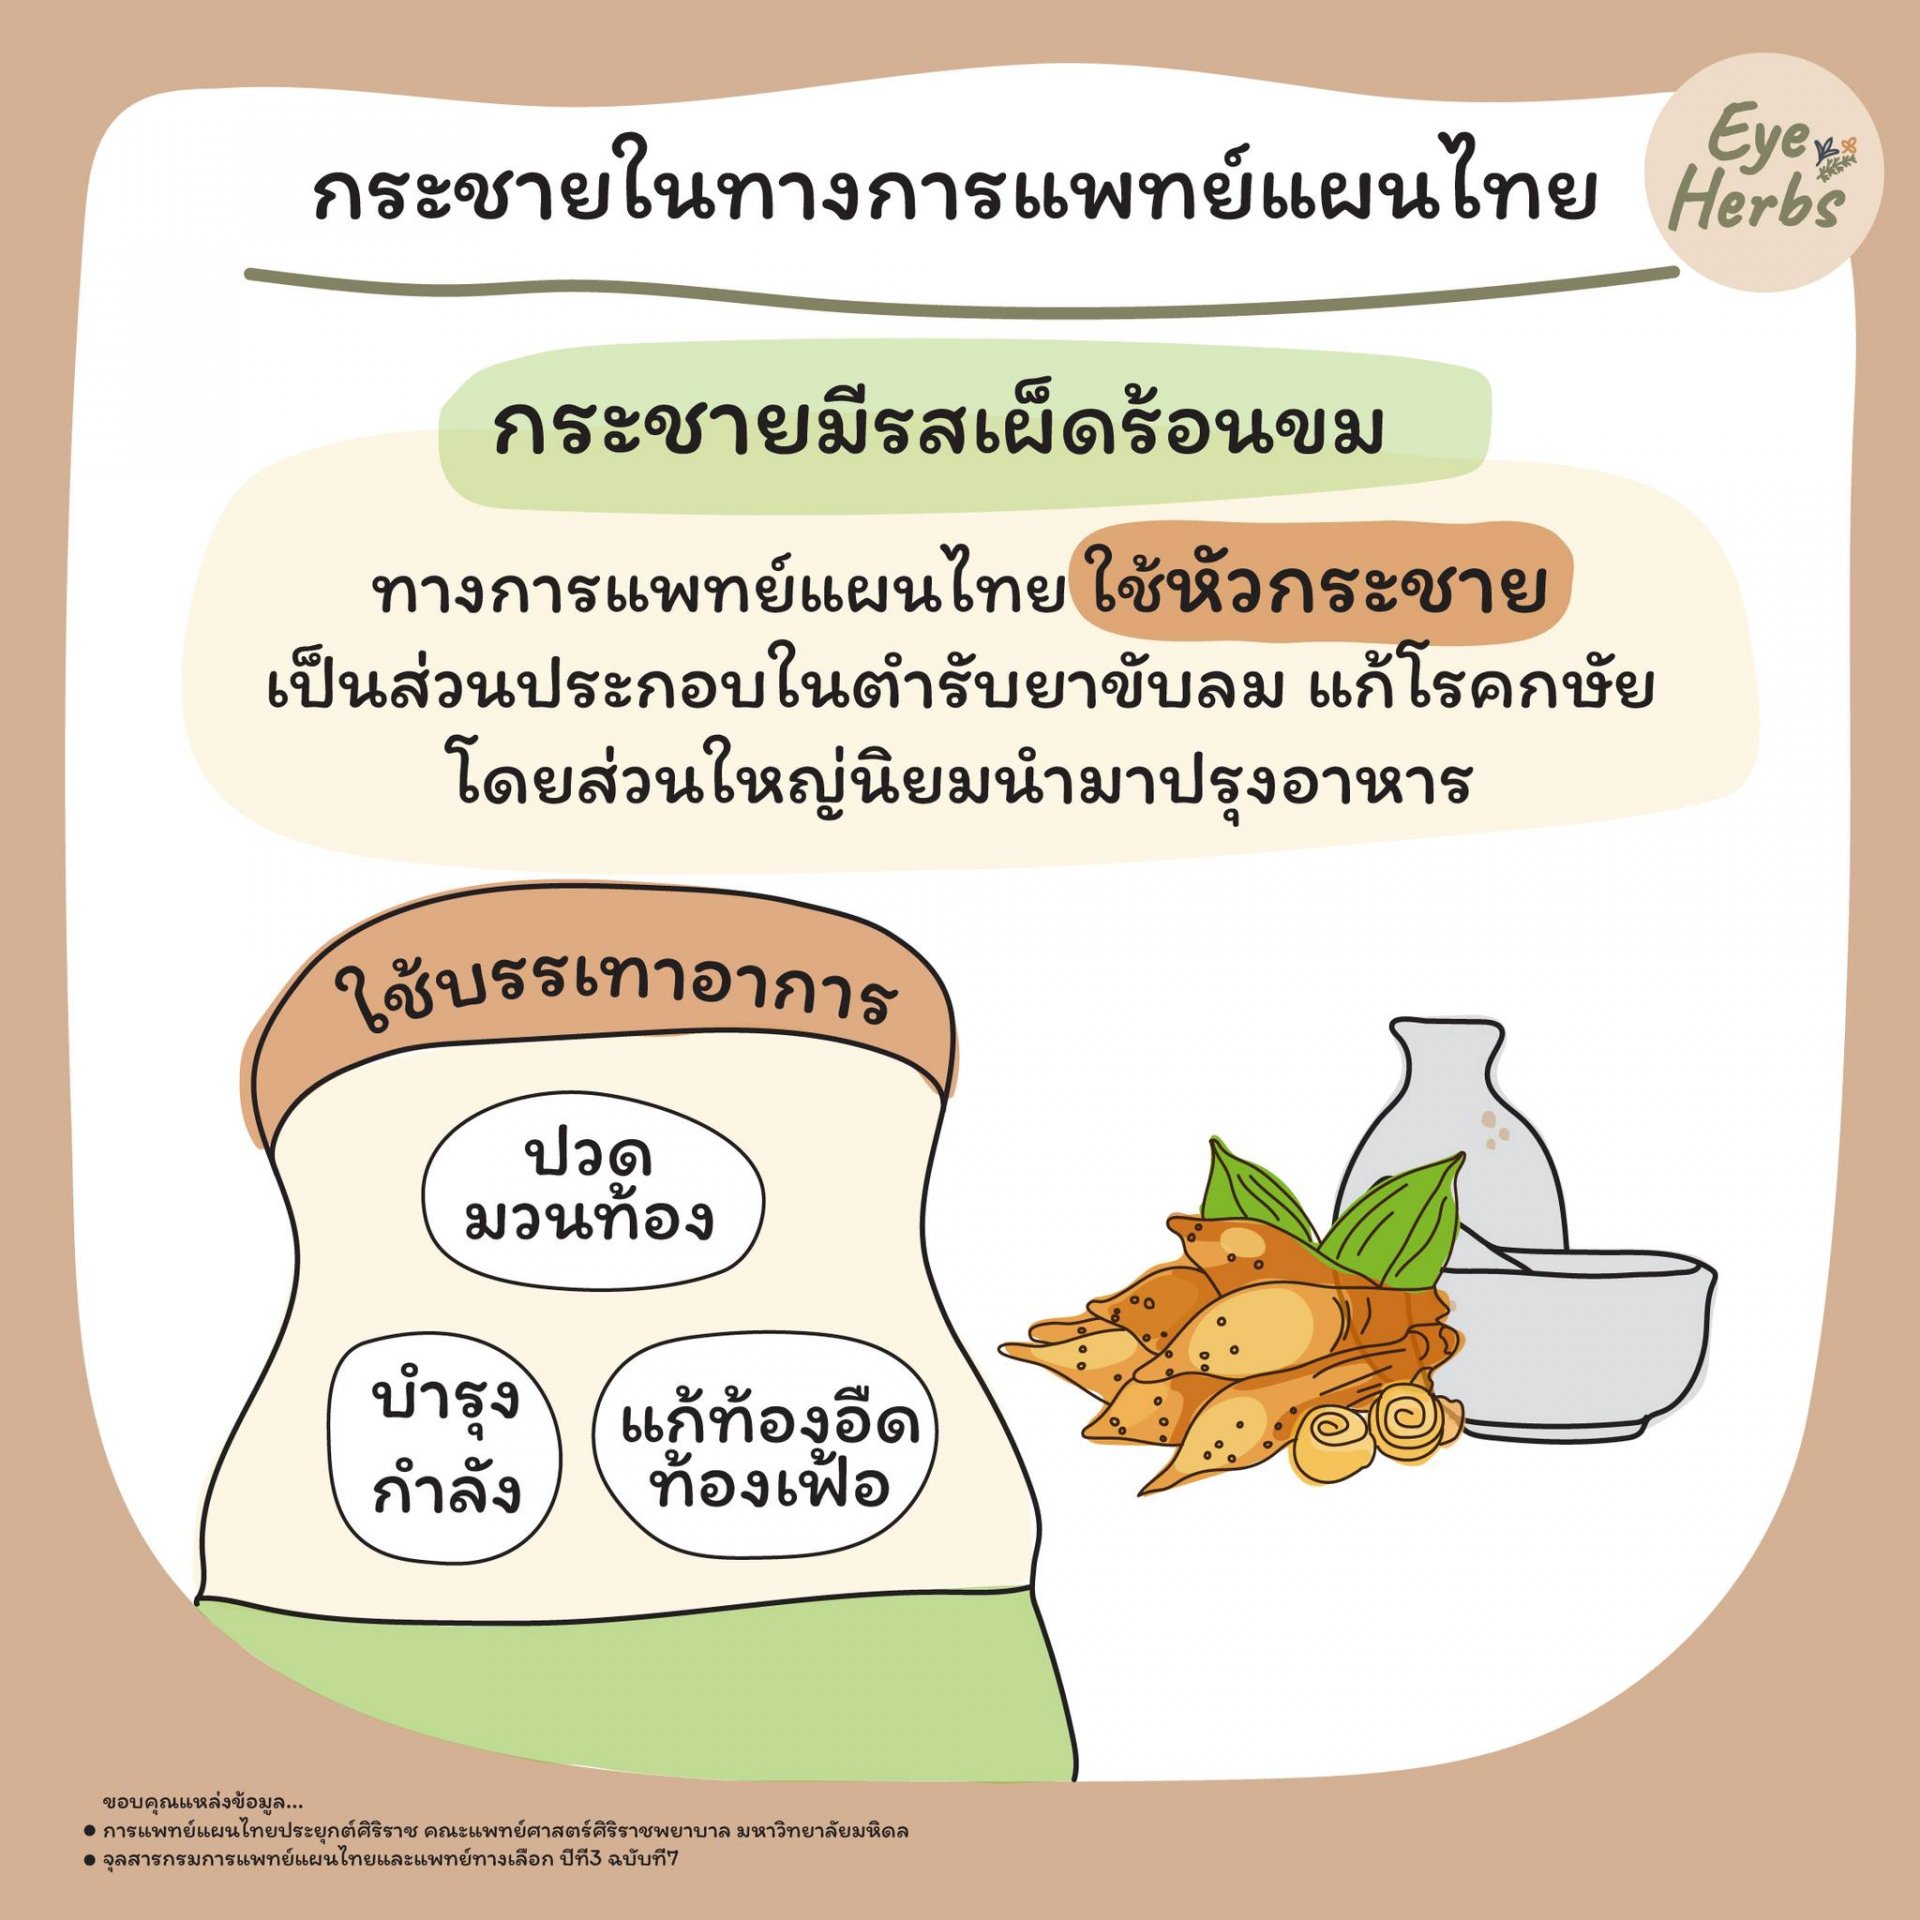 Kaempferia in Thai traditional medicine